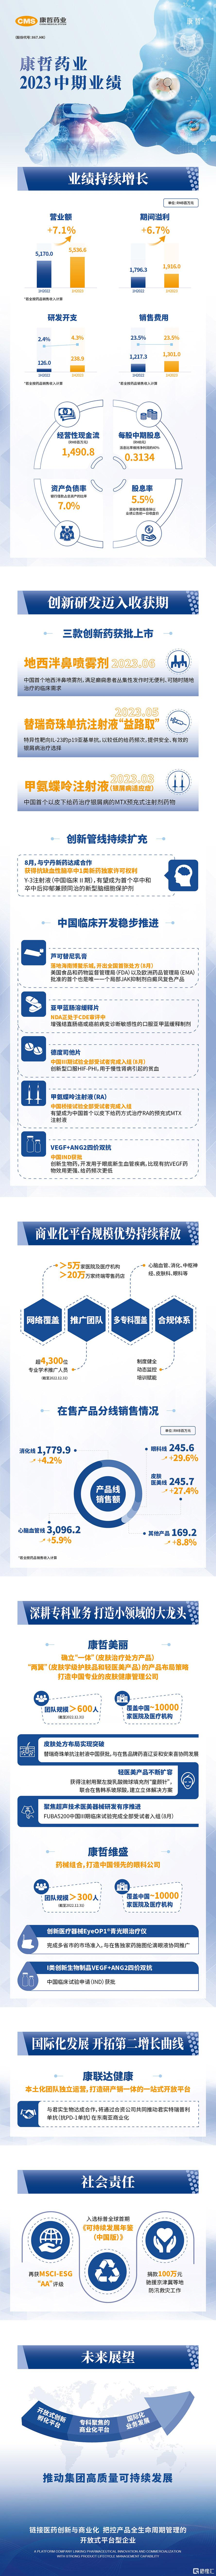 康哲药业(00867.HK)三款创新药中国获批   2023年中期成果亮眼插图